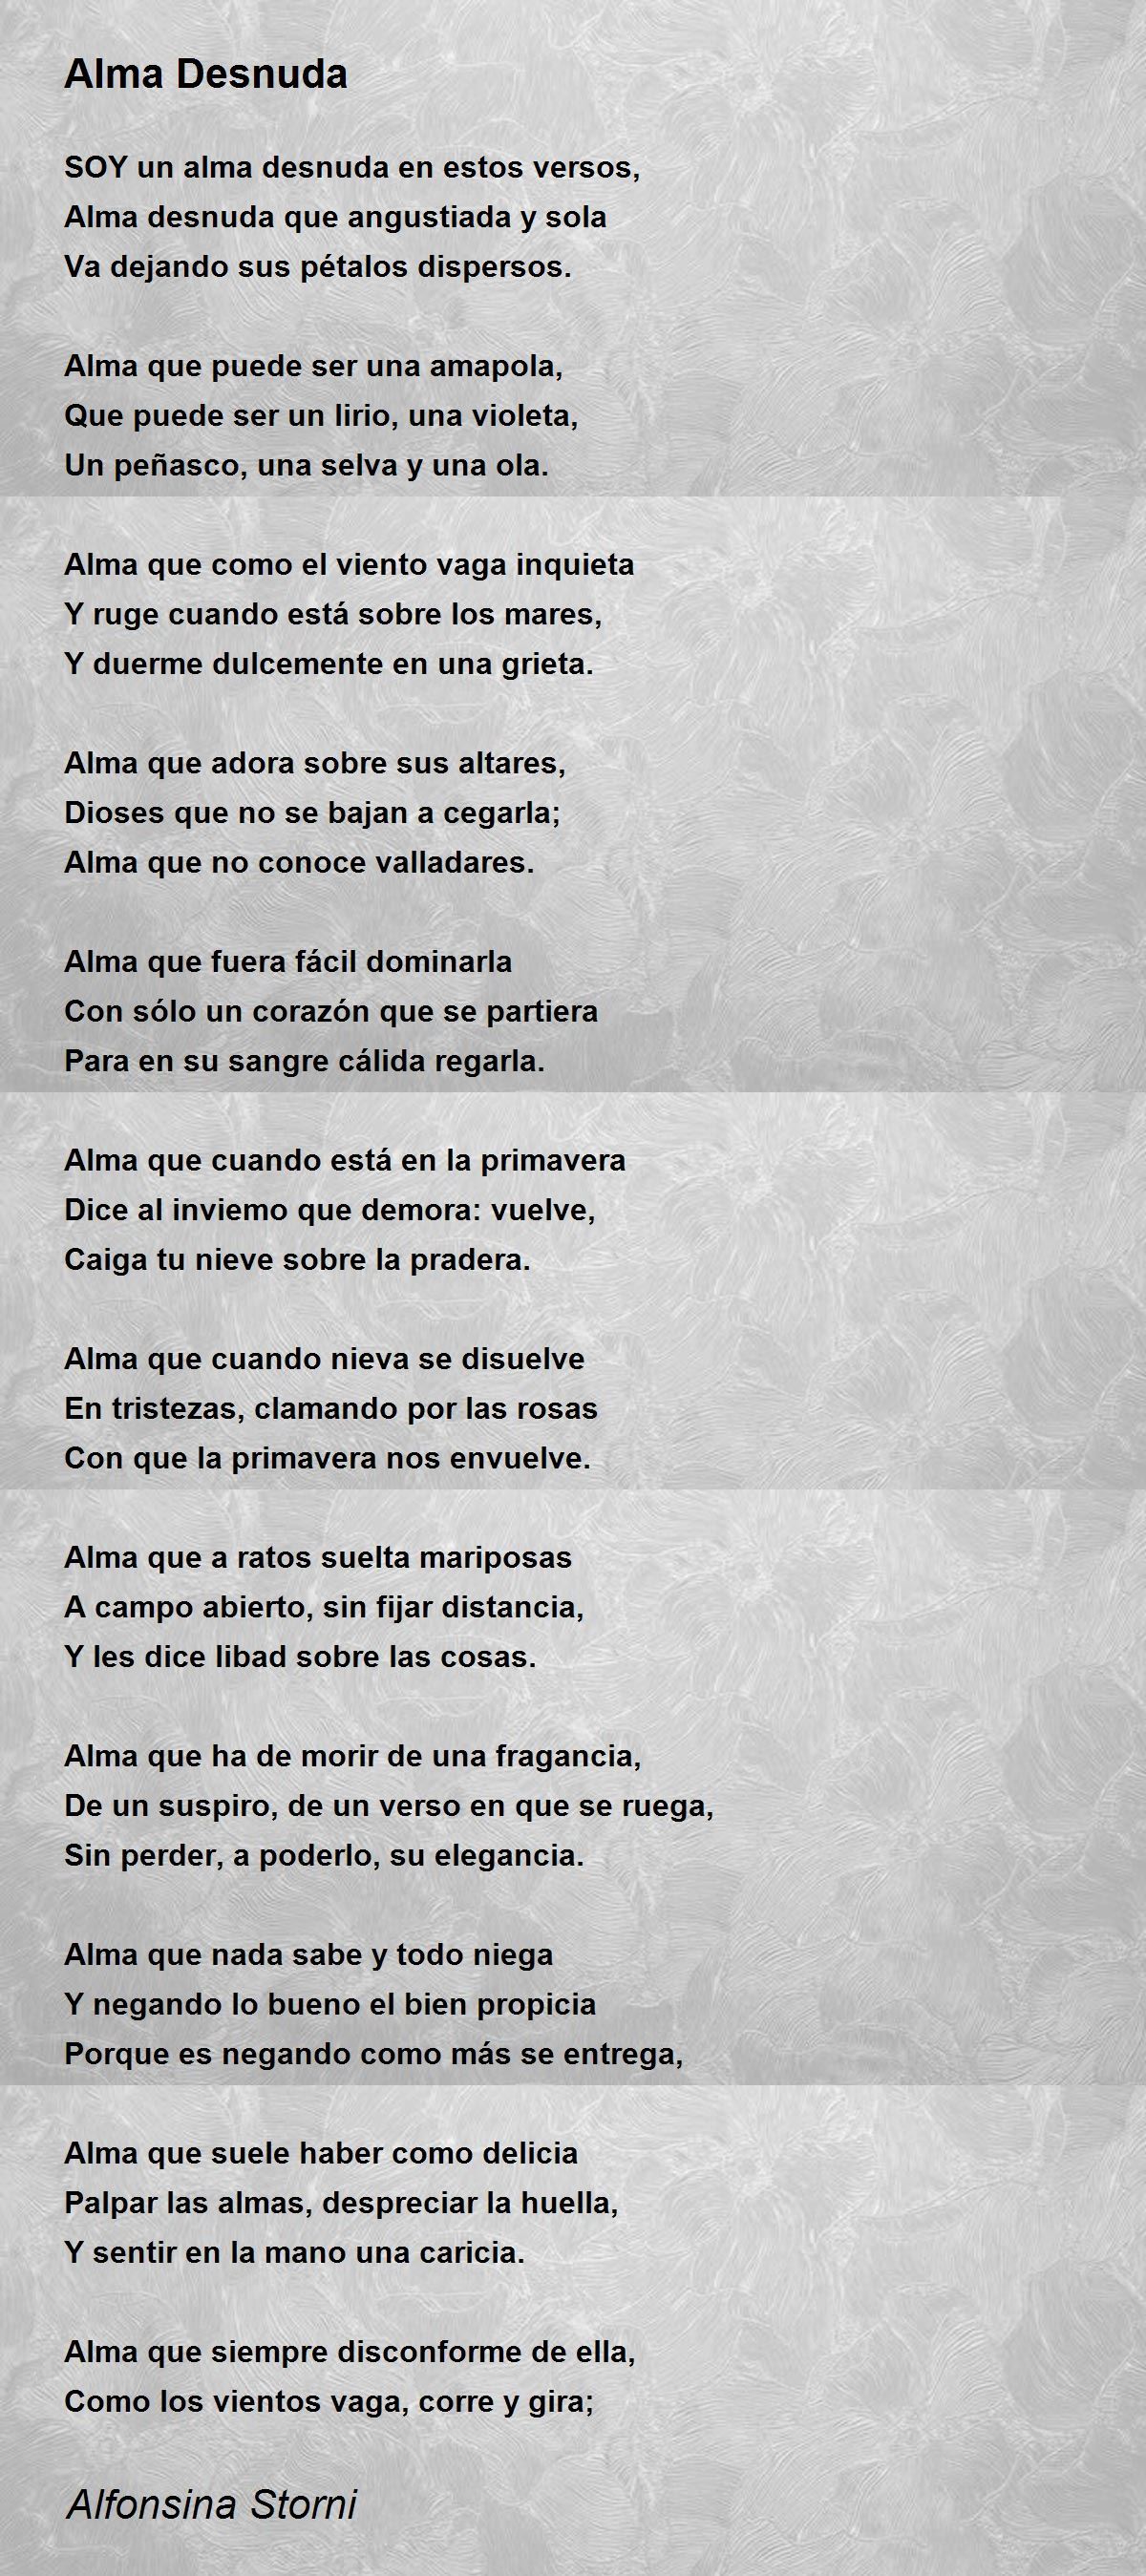 Alma Desnuda - Alma Desnuda Poem by Alfonsina Storni